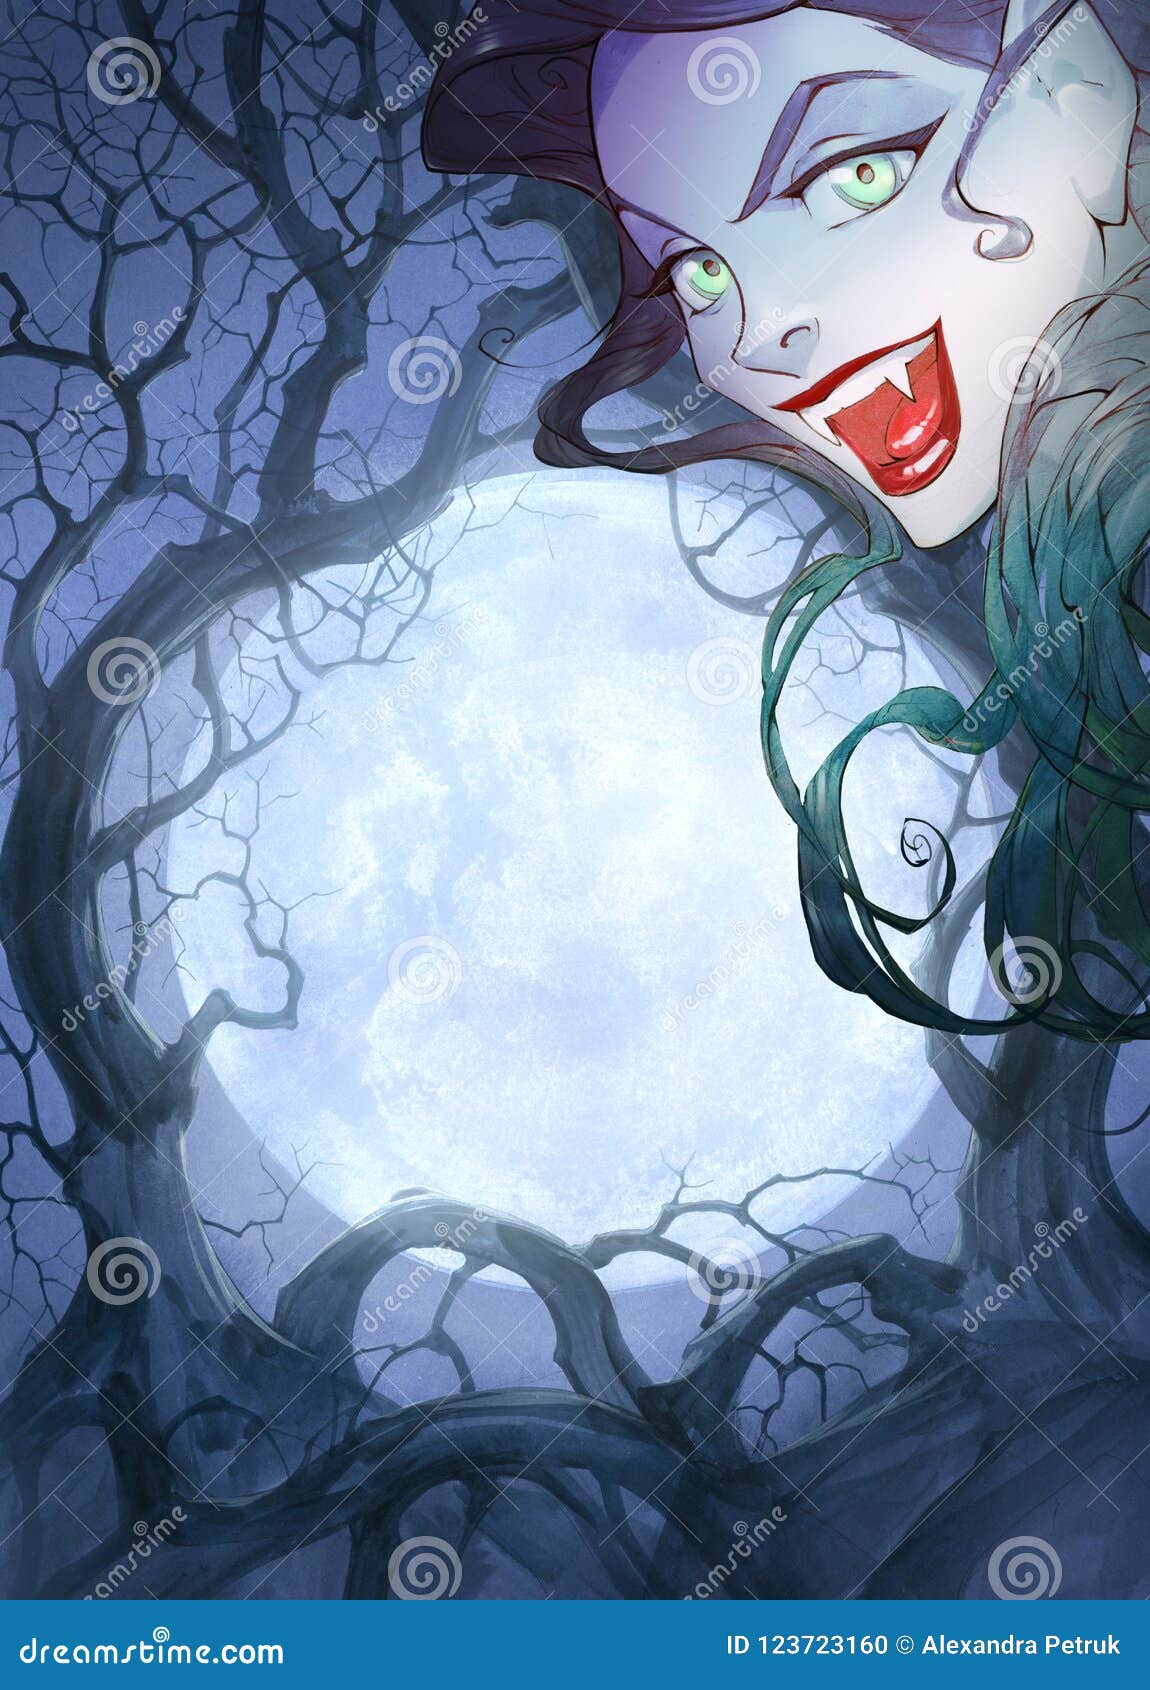 Ilustração do estilo anime de uma garota em uma fantasia de bruxa